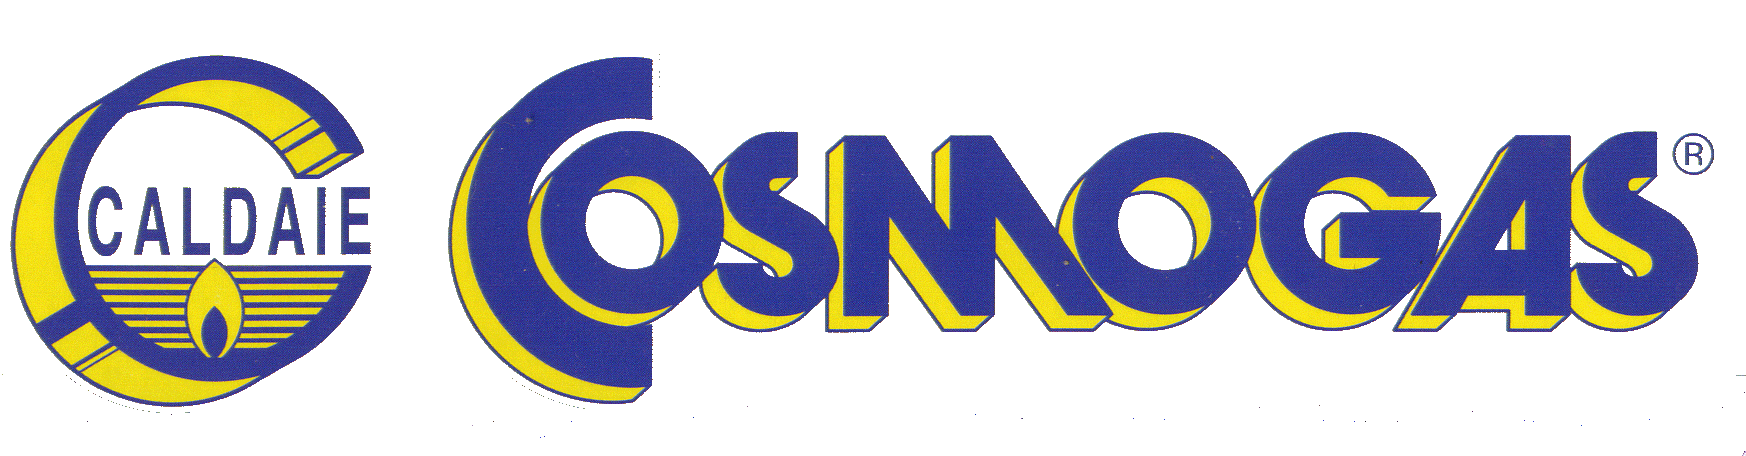 Cosmogas_logo